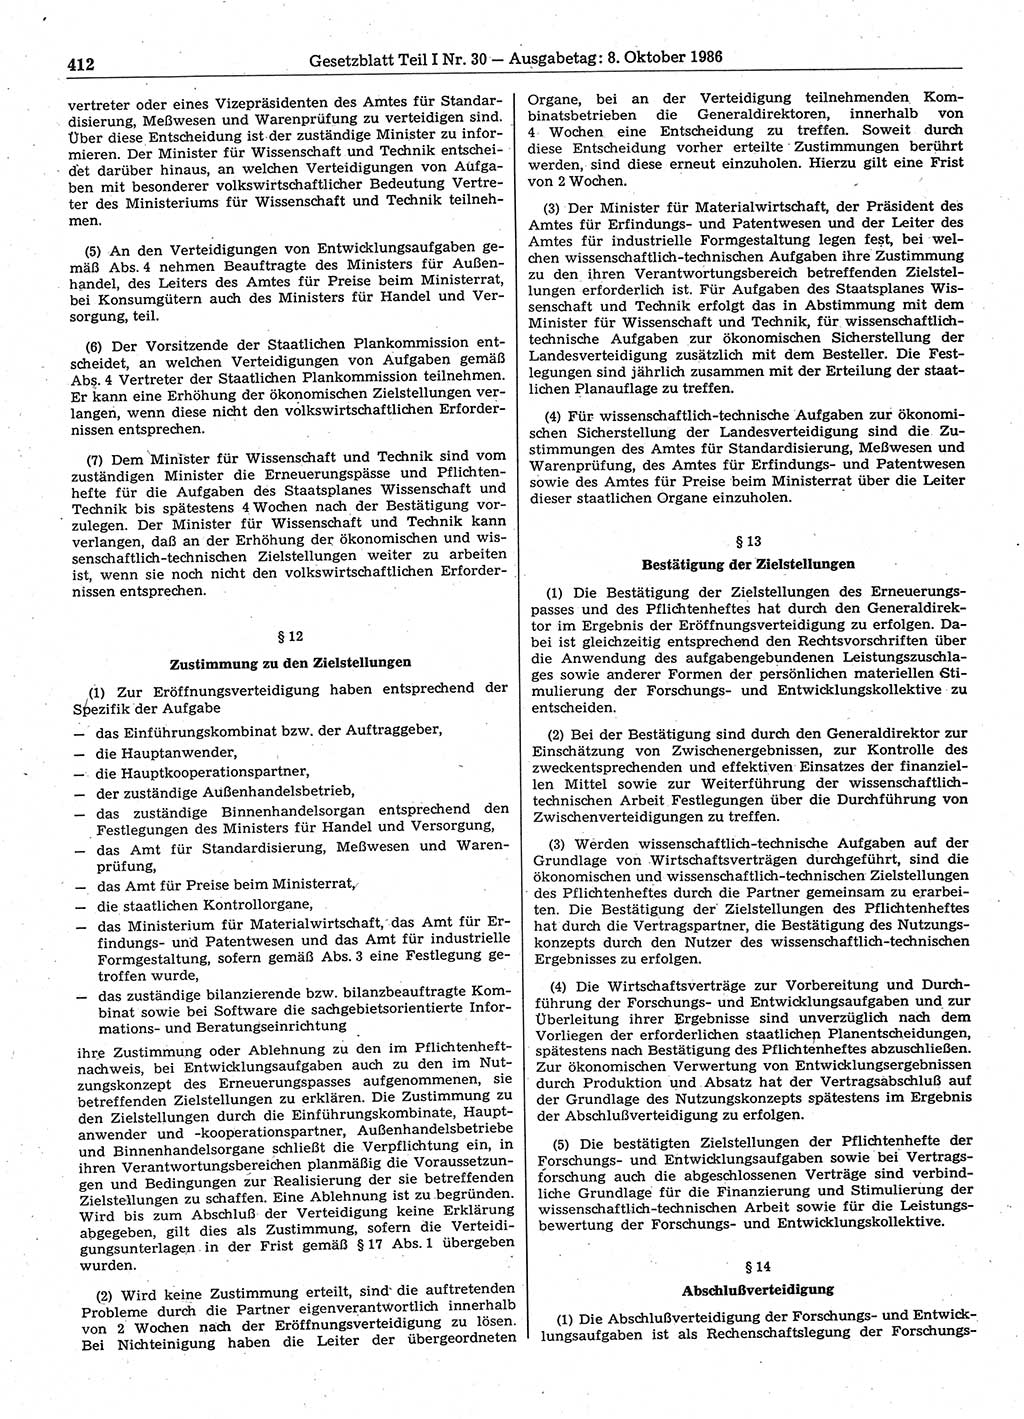 Gesetzblatt (GBl.) der Deutschen Demokratischen Republik (DDR) Teil Ⅰ 1986, Seite 412 (GBl. DDR Ⅰ 1986, S. 412)